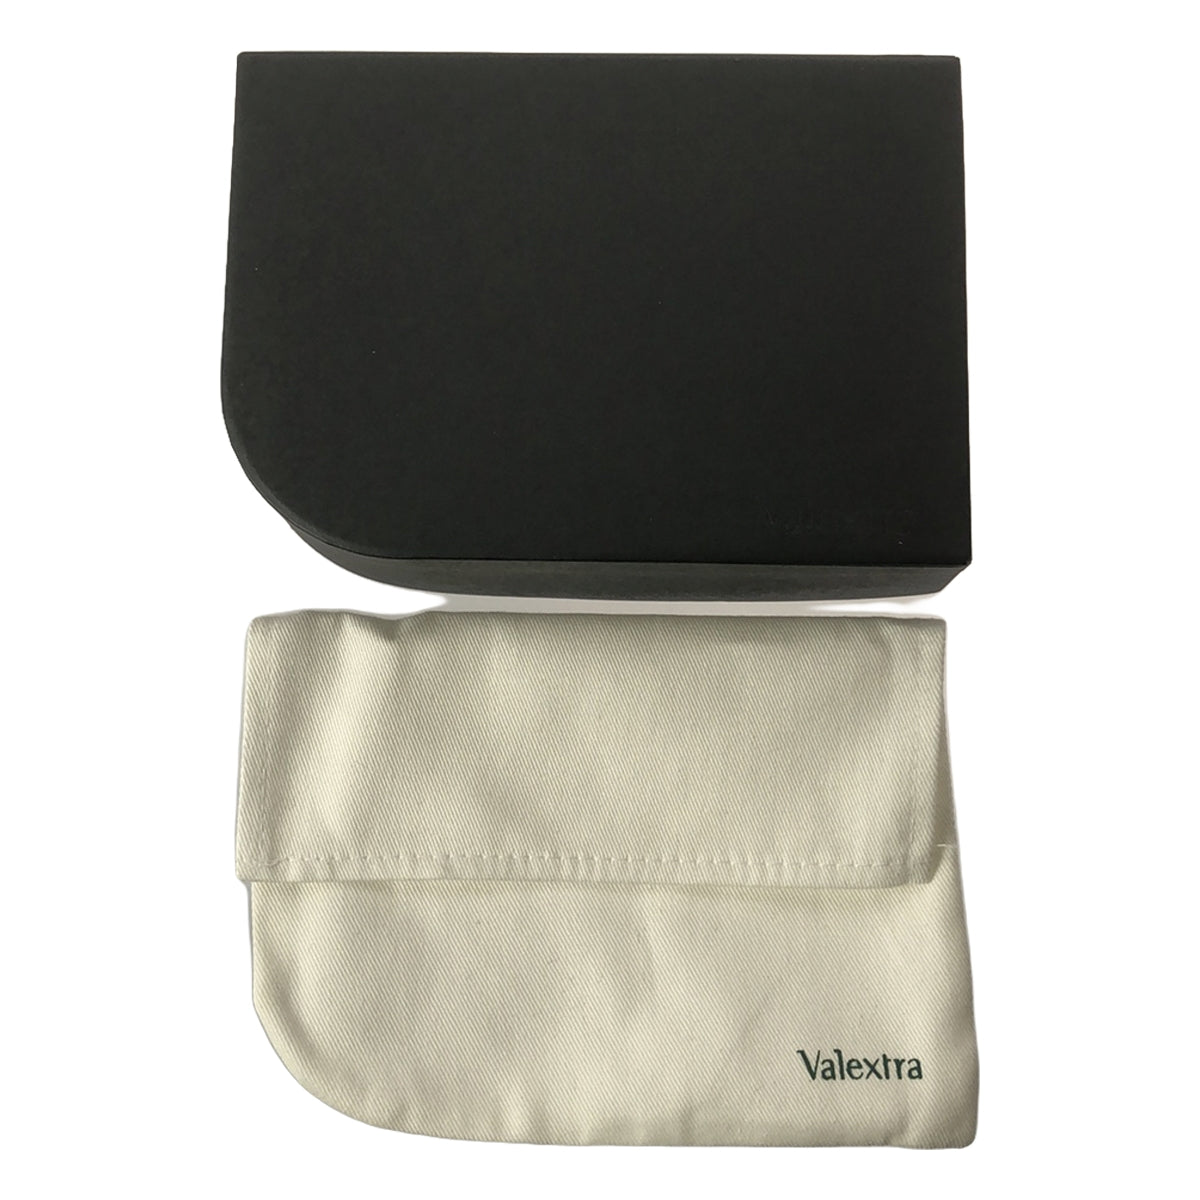 Valextra / ヴァレクストラ | 二つ折り 6カード クラシックウォレット 財布 | ホワイト | メンズ